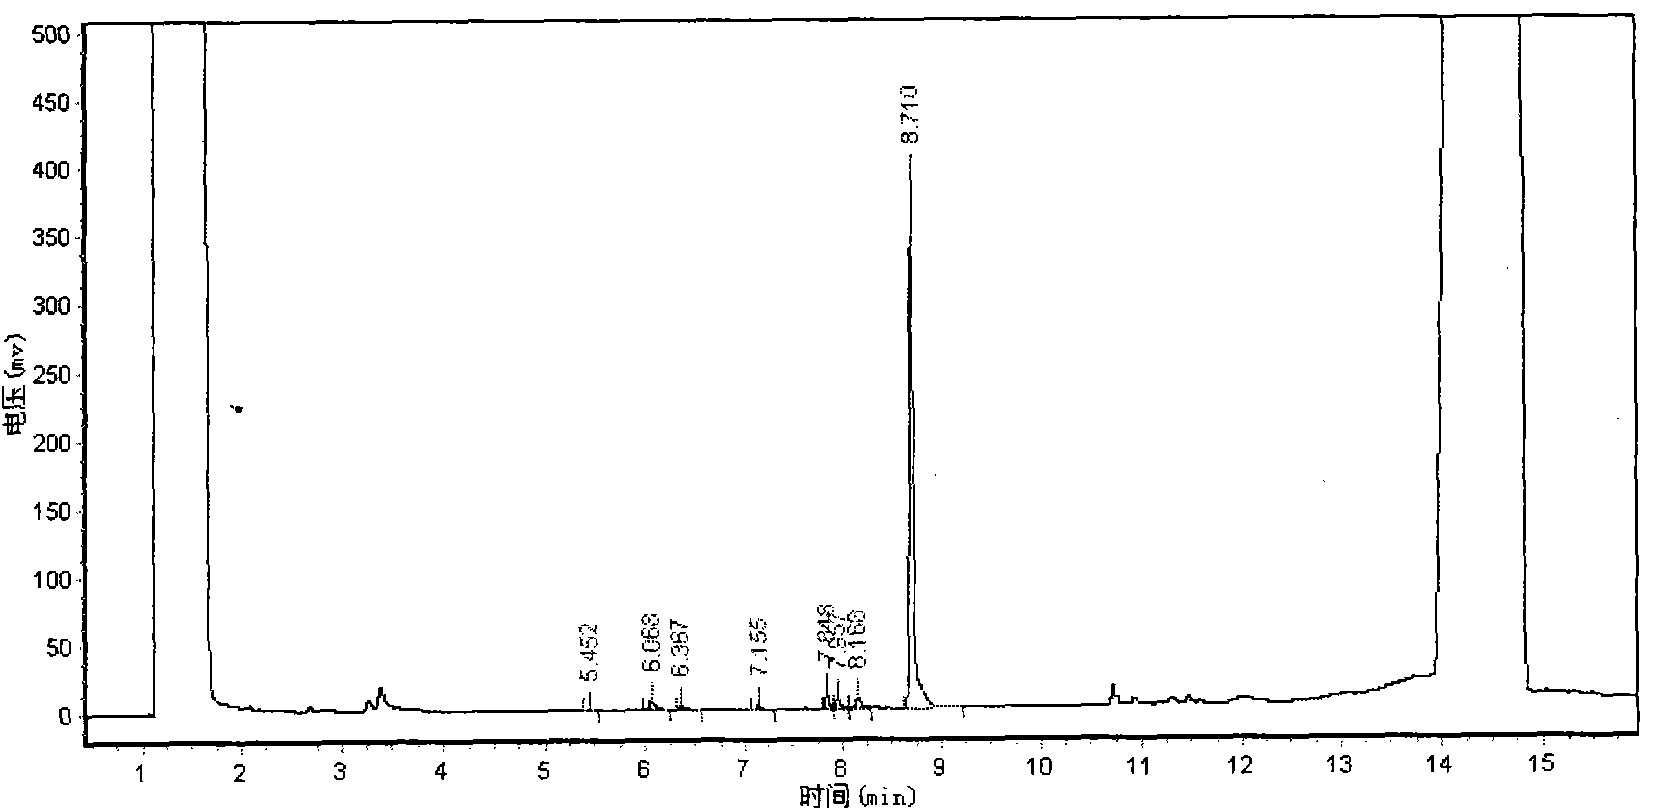 Method for preparing TCPP (Tris(Chloroisopropyl)Phosphate) flame retardant